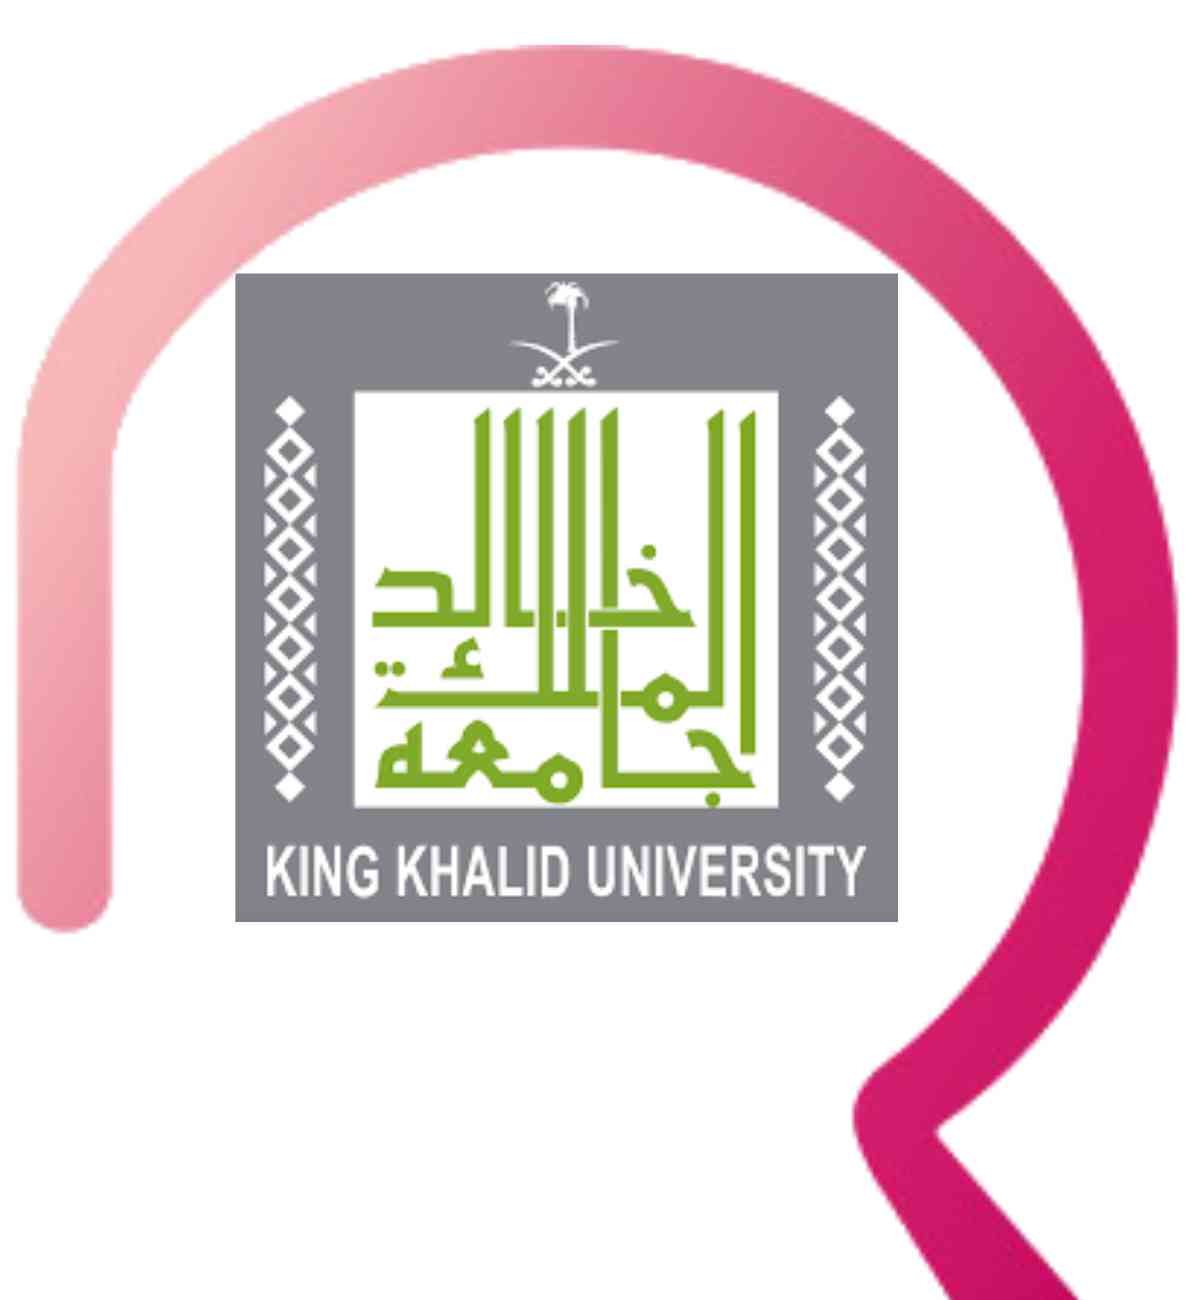 بلاك بورد جامعة الملك خالد | 10 مزايا تهم منسوبي الجامعة من الطلاب وأعضاء التدريس
